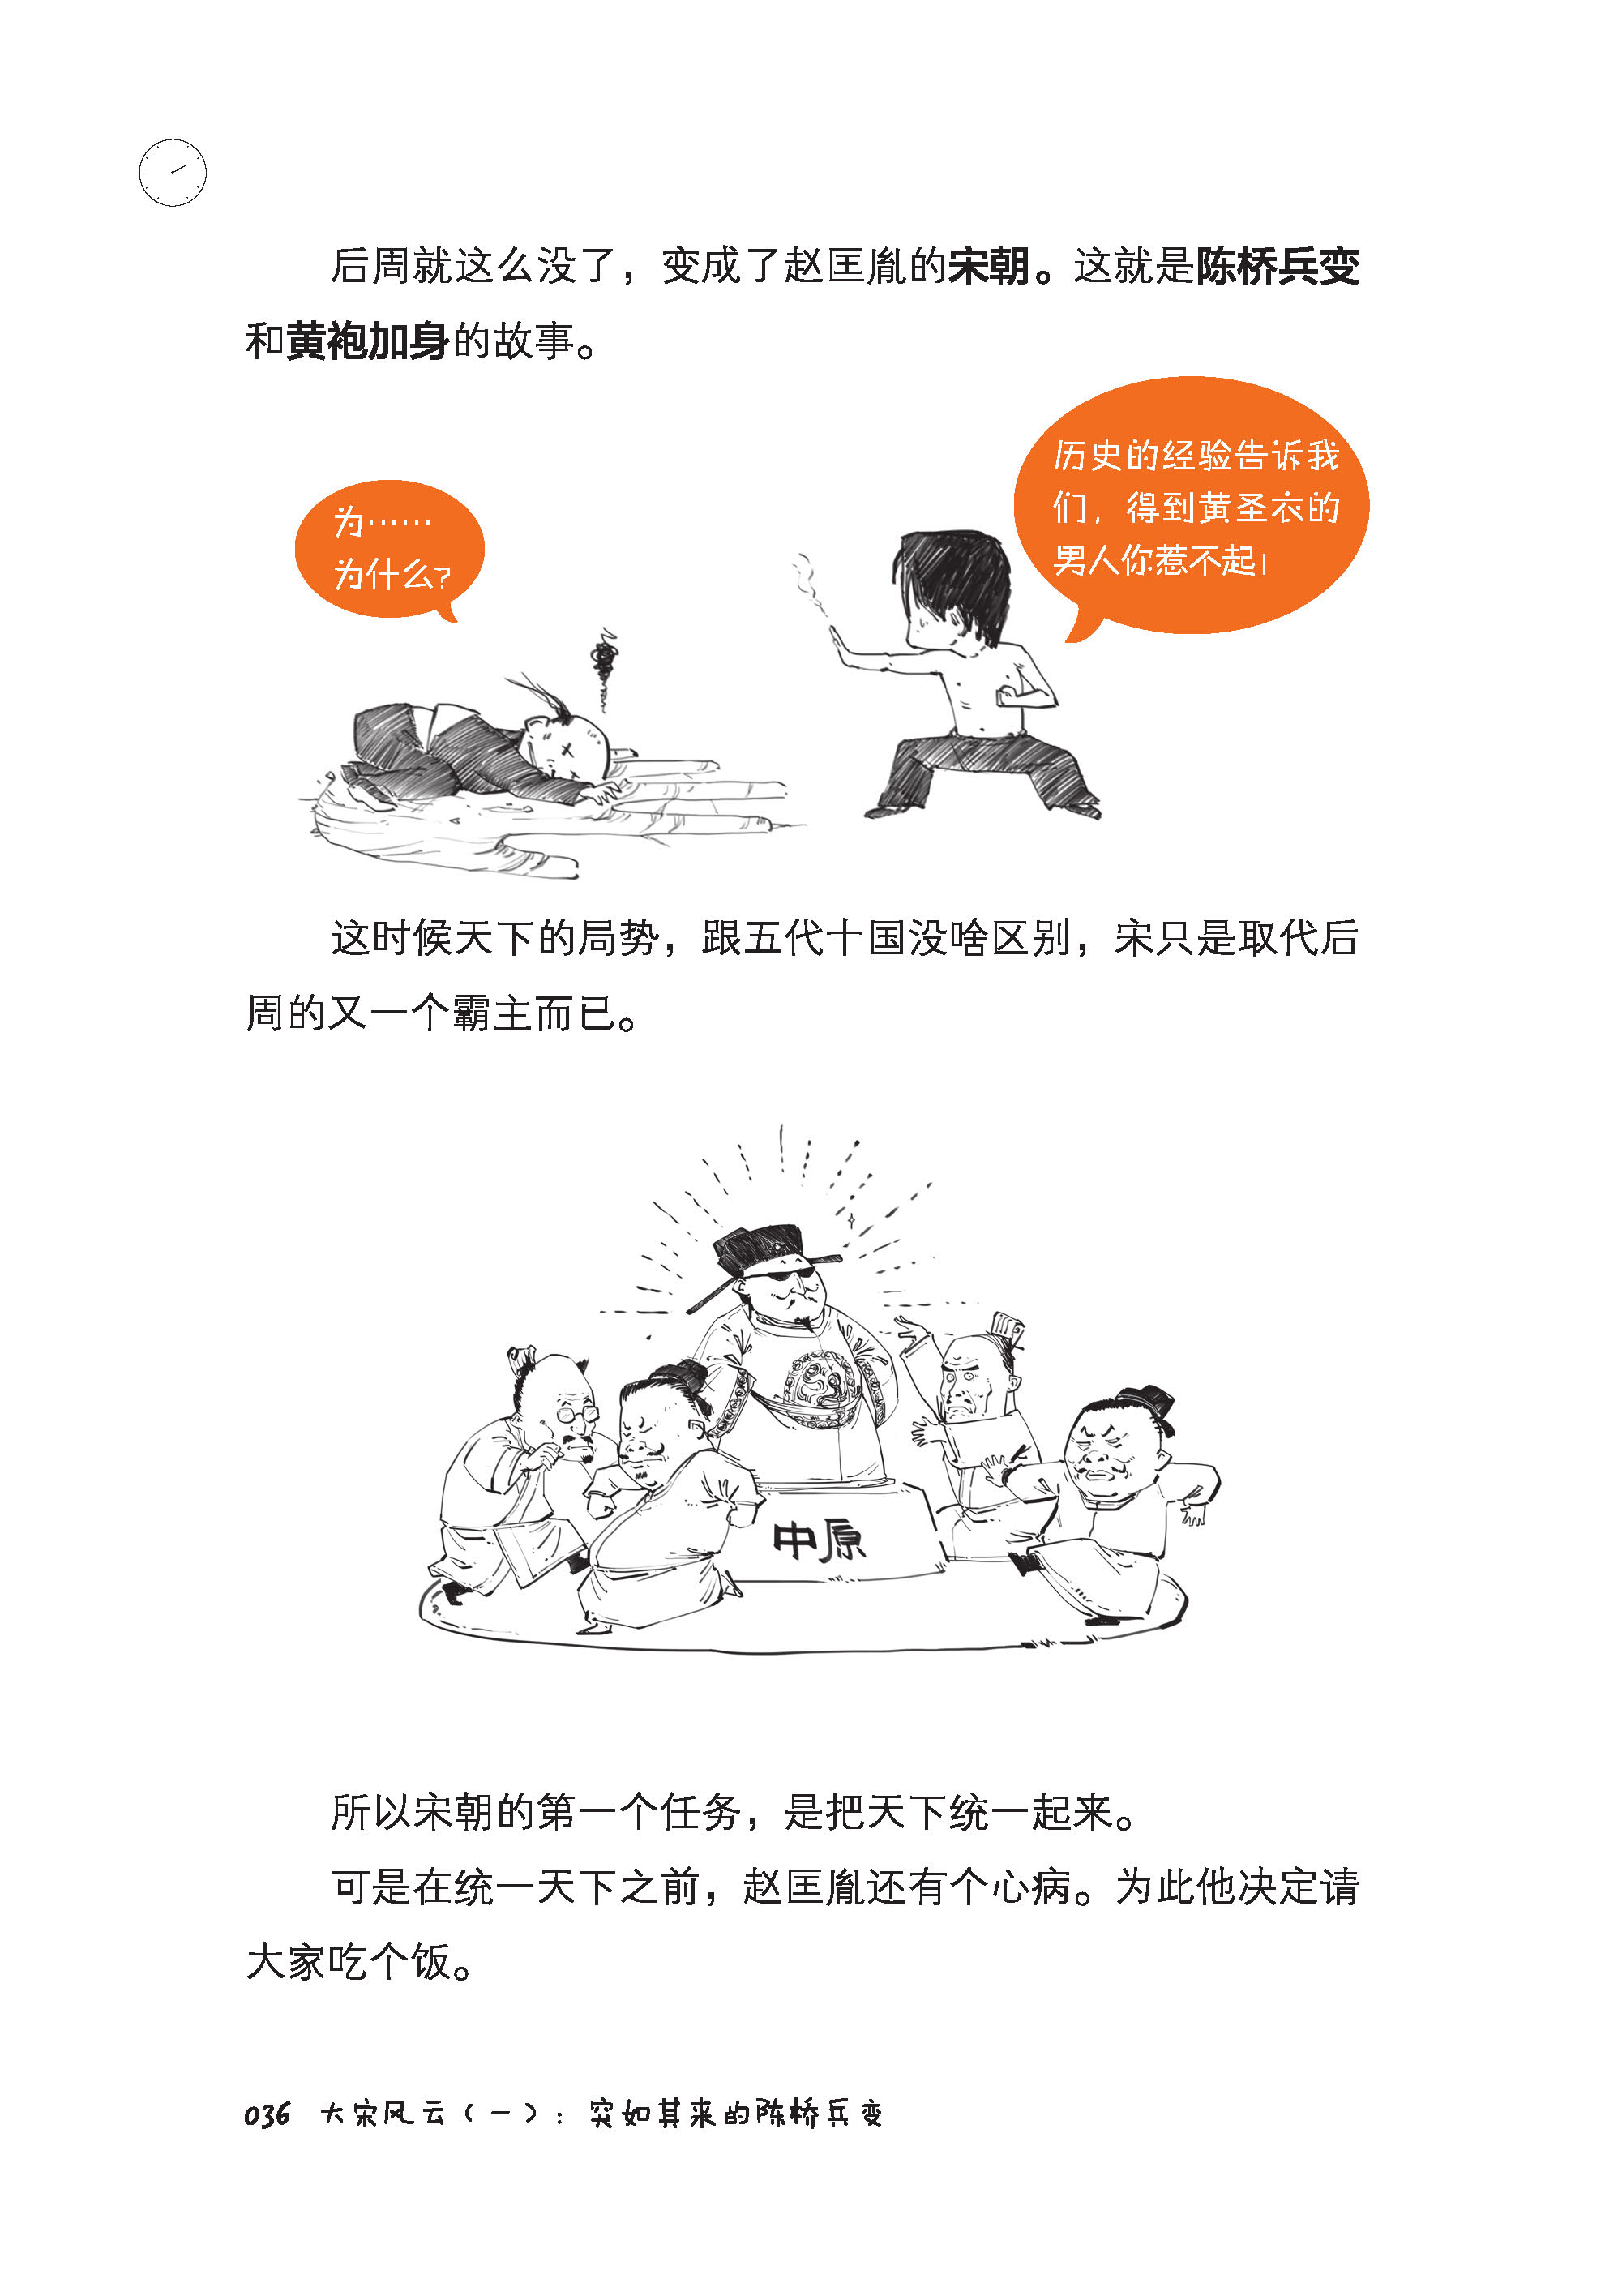 减5 全5册半小时漫画中国史全套1234 世界史 二混子陈磊 中华上下